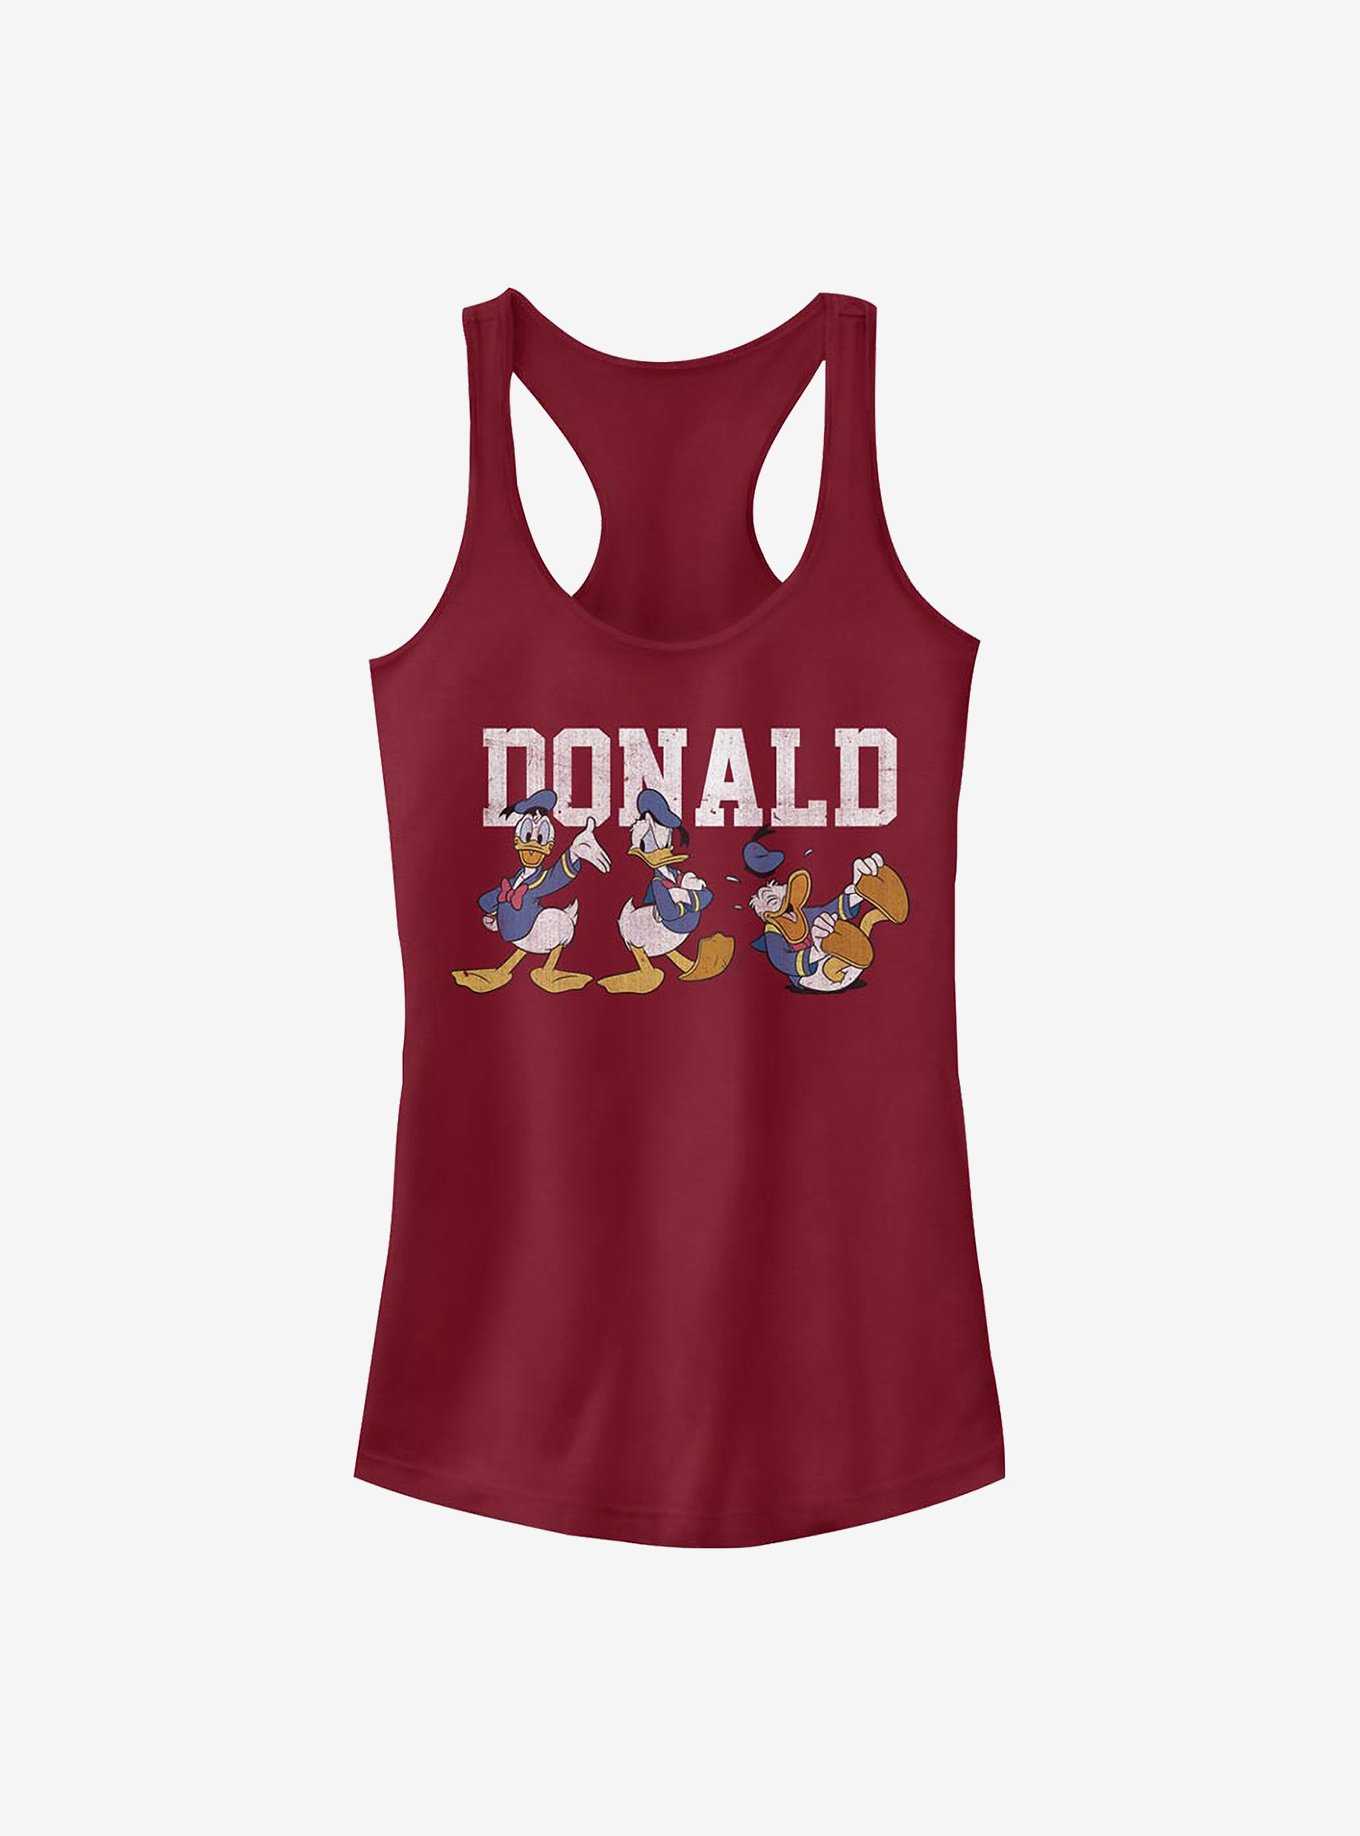 Disney Donald Duck Donald Poses Girls Tank, , hi-res